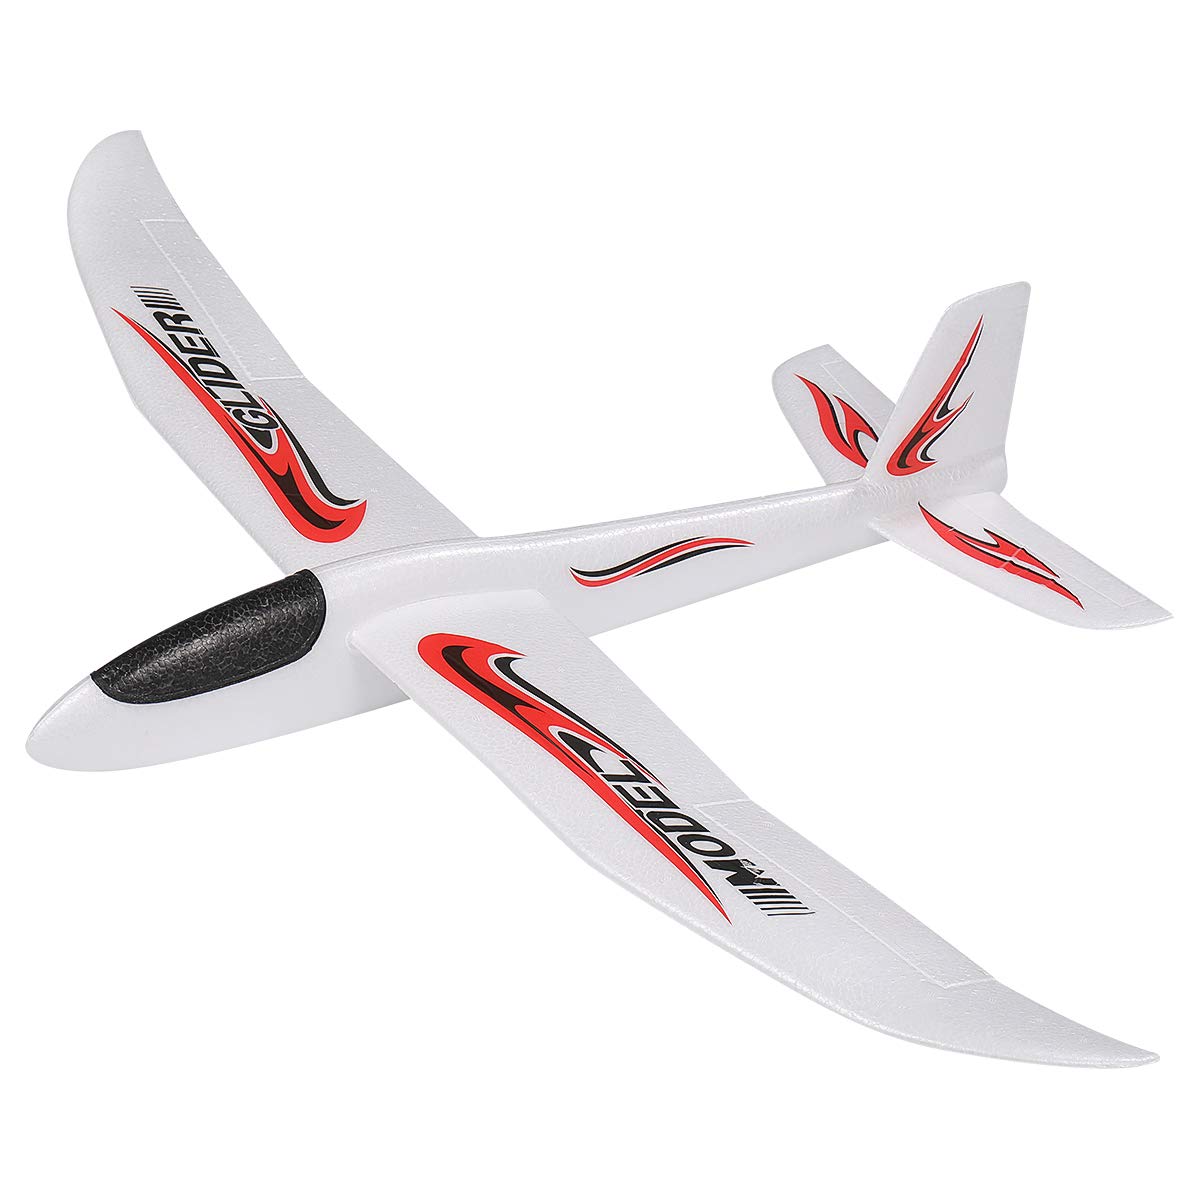 LED Flying Toys Toyandona 1pc Foam Glider Airplane 39 inch grote werpvliegtuigen lichtgewicht buiten voor meisjes jongens feest gunst of gi ammnj